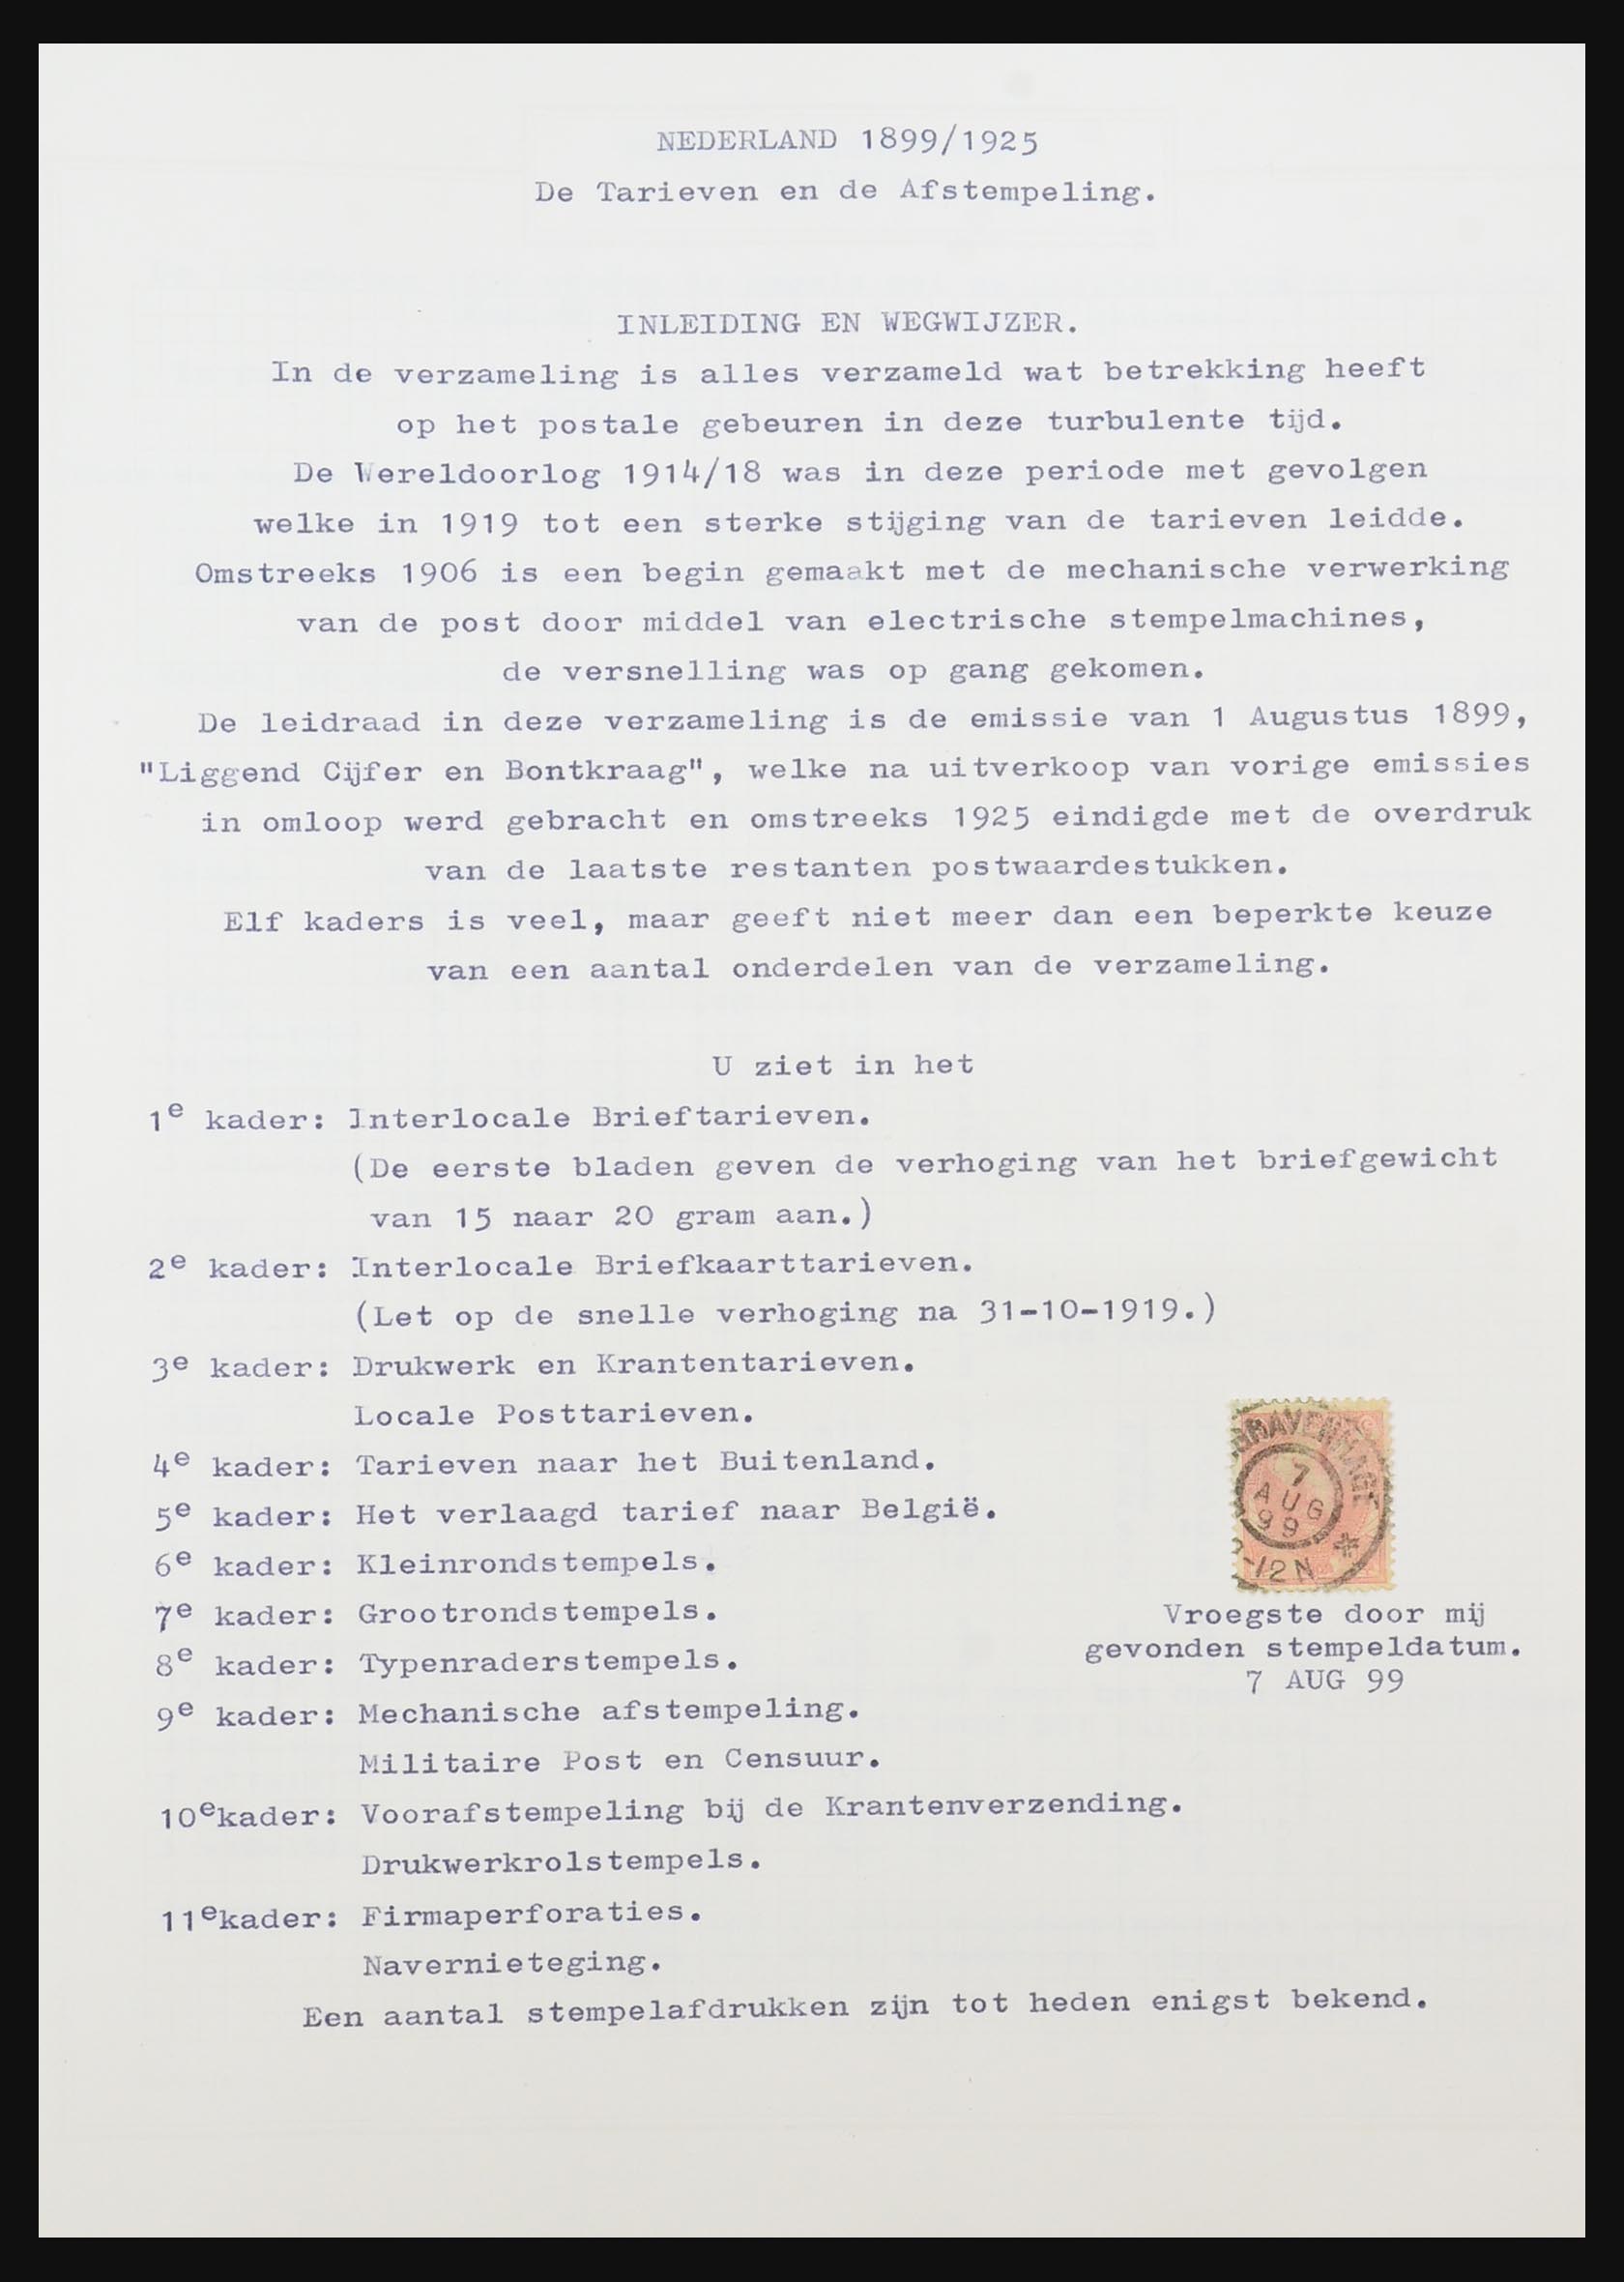 31528 119 - 31528 Nederland brieven 1853-1953.